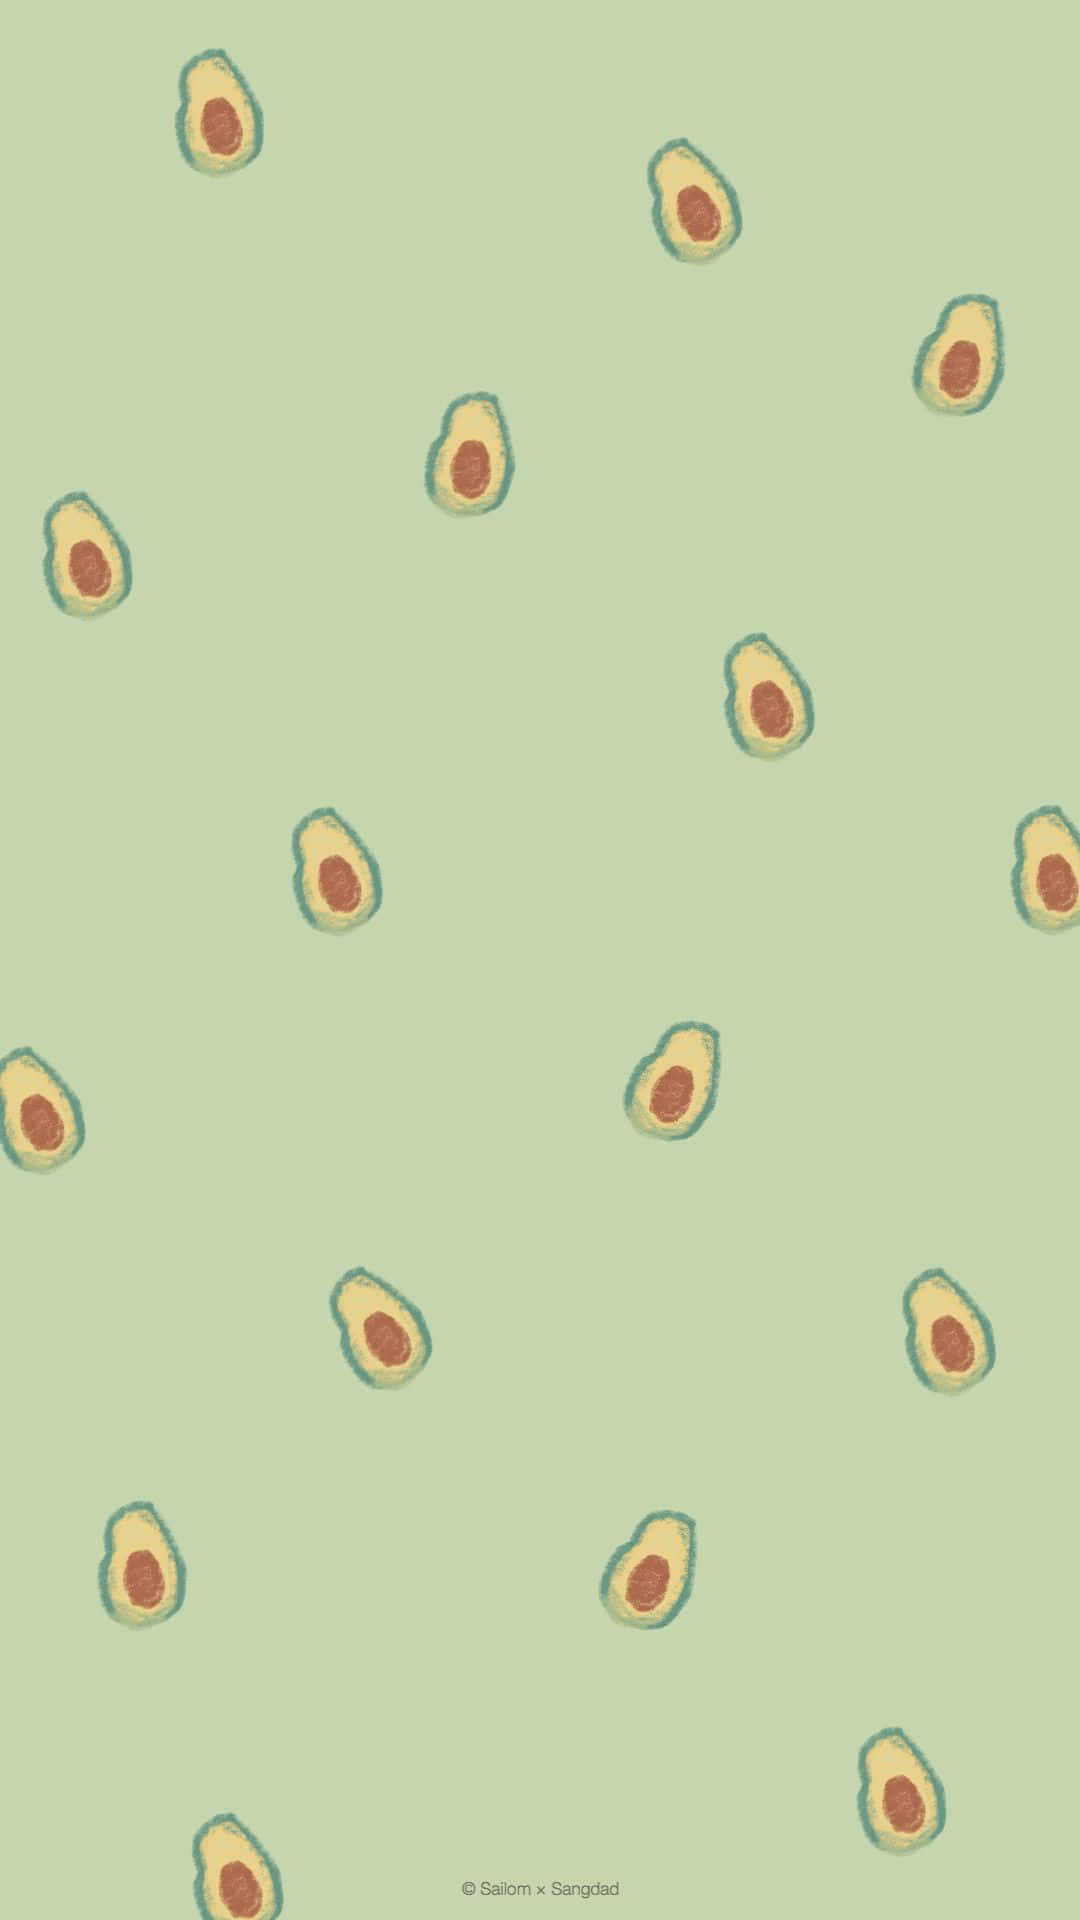 Frischgeschnittene Avocados, Garniert Mit Meersalz Auf Einem Weißen Iphone-hintergrund. Wallpaper